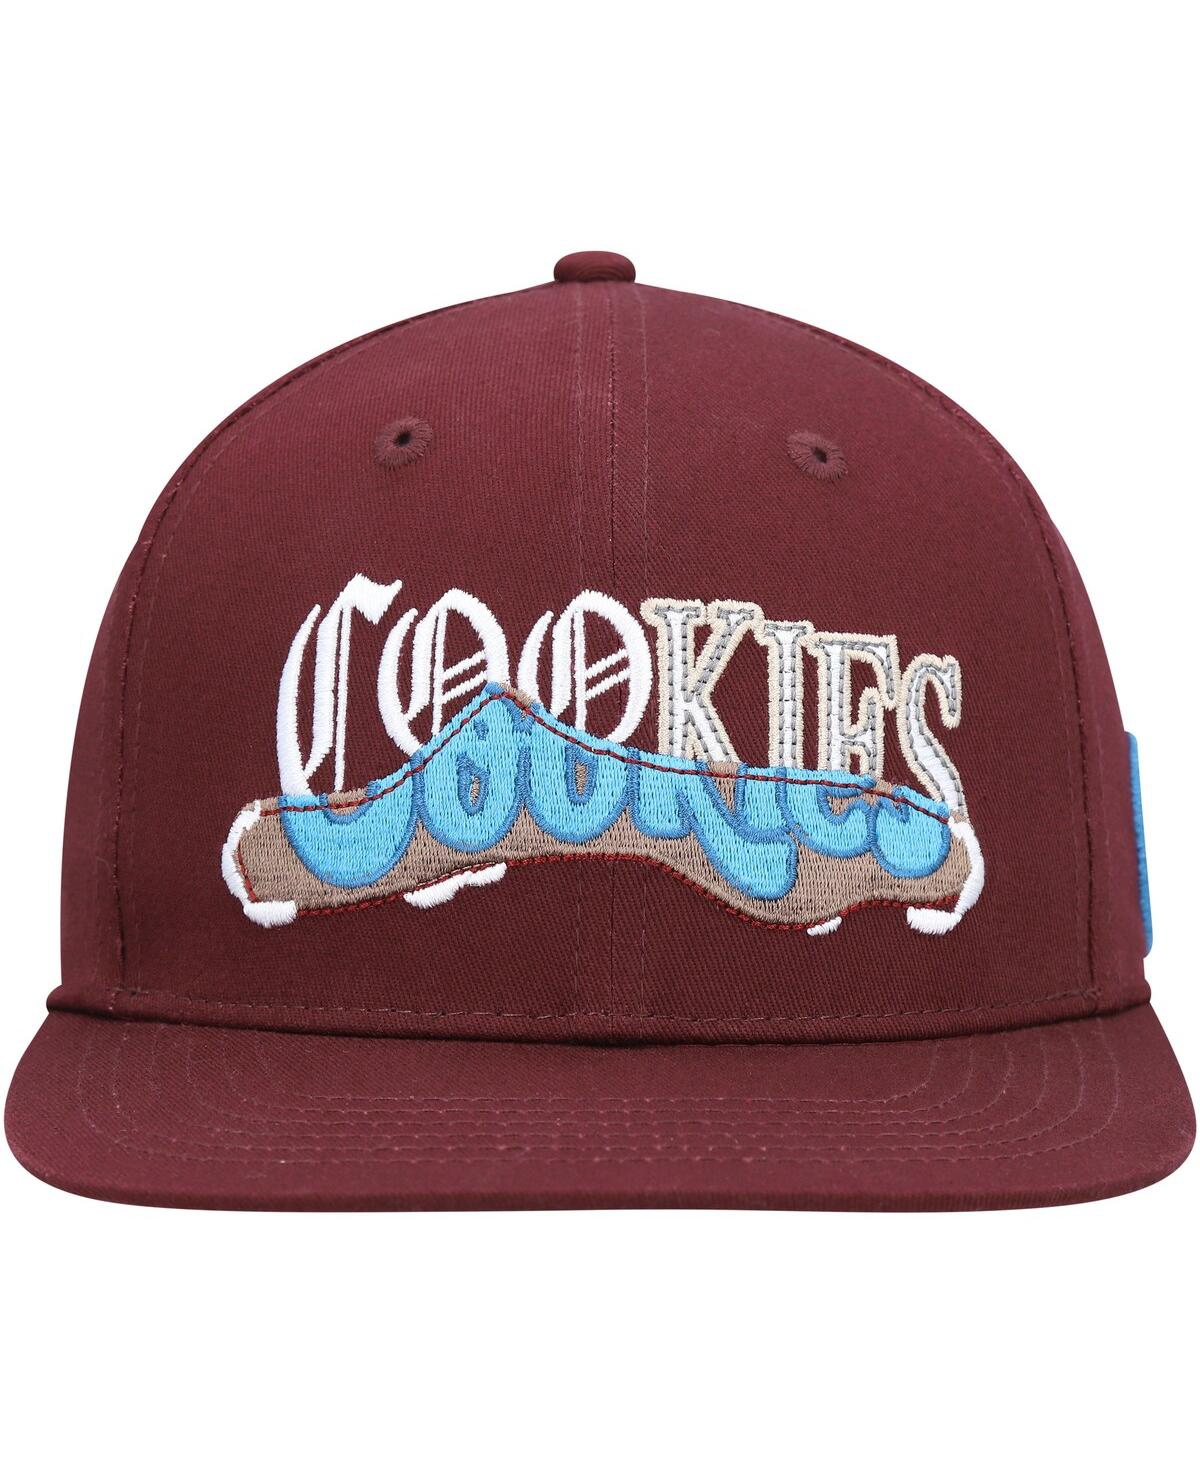 Shop Cookies Men's  Burgundy Upper Echelon Snapback Hat